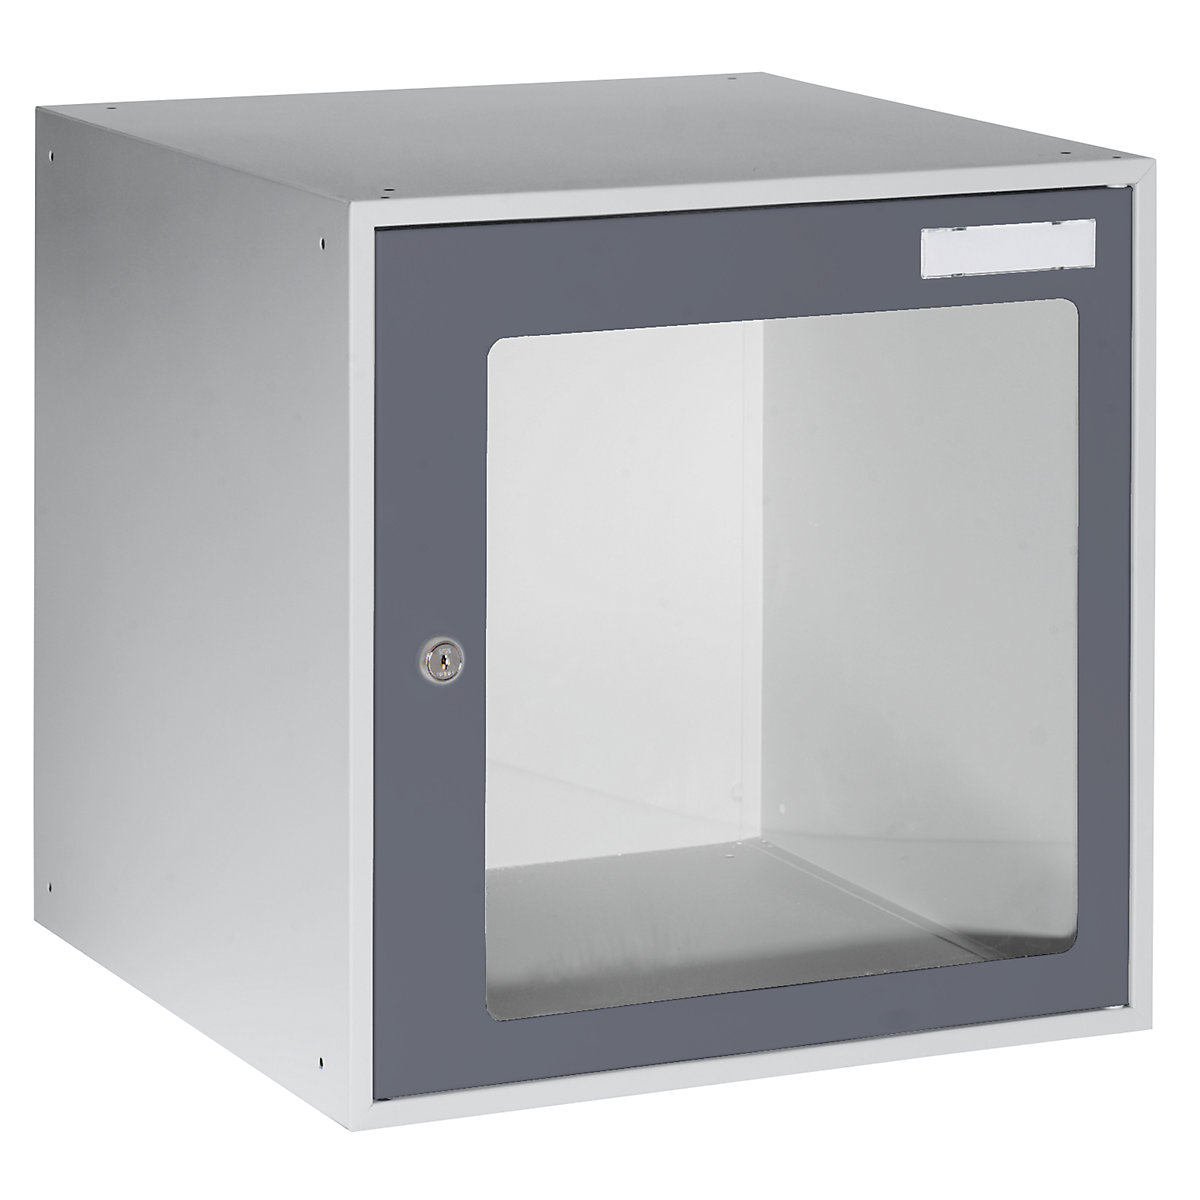 EUROKRAFTbasic – Casier verrouillable vitré, h x l x p 450 x 450 x 450 mm, cadre de porte gris basalte RAL 7012